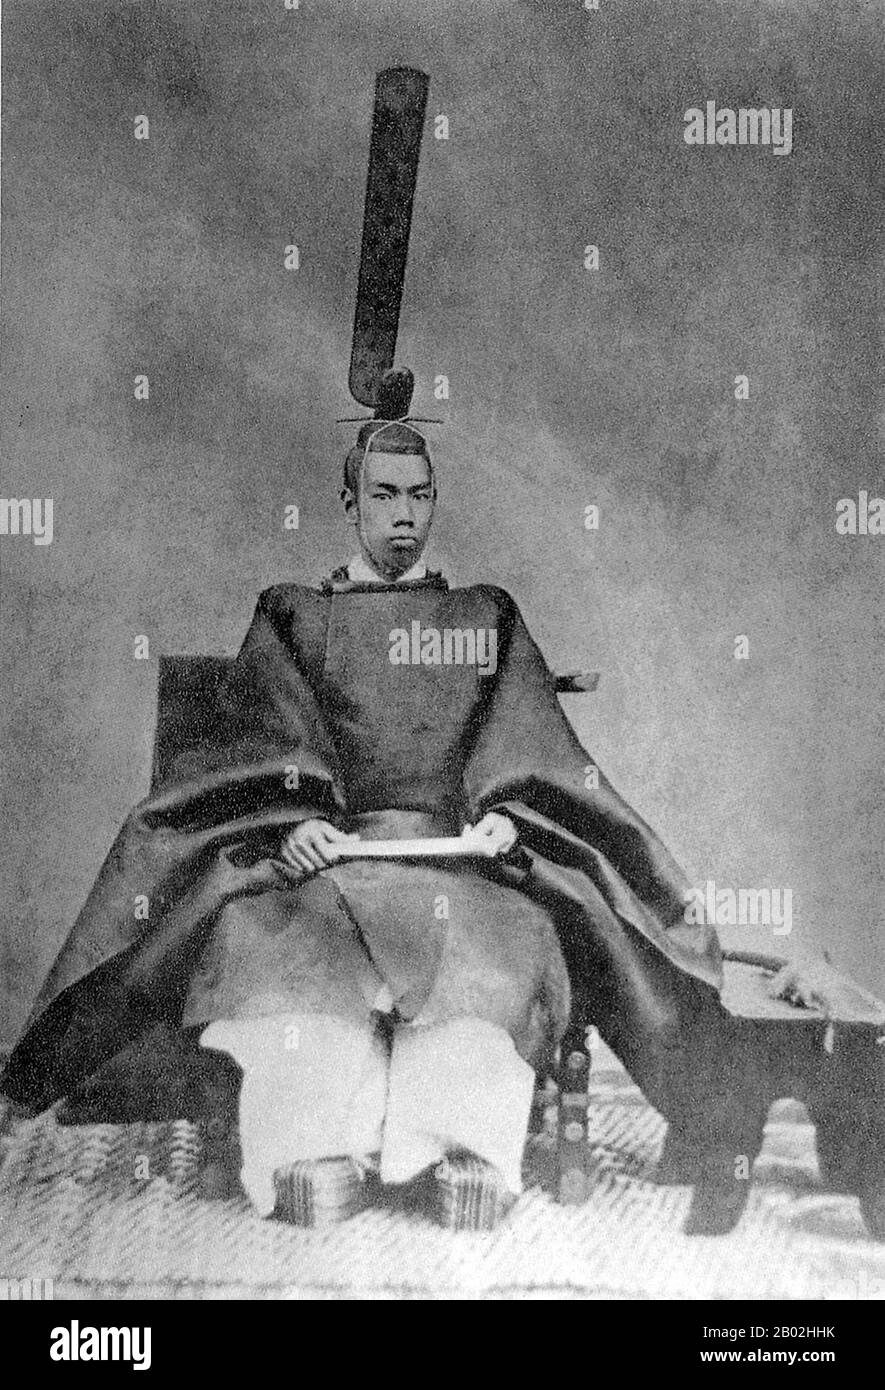 L'imperatore Meiji (明治天皇 Meiji-tennō, 3 novembre 1852 – 30 luglio 1912), o Meiji il Grande (明治大帝 Meiji-taitei), fu l'imperatore 122nd del Giappone secondo l'ordine di successione tradizionale, regnante dal 3 febbraio 1867 fino alla sua morte il 30 luglio 1912. Presiedette un periodo di rapido cambiamento nell'Impero del Giappone, mentre la nazione cambiò rapidamente da stato feudale a potenza mondiale capitalista e imperiale, caratterizzata dalla rivoluzione industriale del Giappone. All'epoca della sua nascita nel 1852, il Giappone fu un paese feudale isolato, preindustriale, dominato dallo Shogunato Tokugawa e dal daimyo, w Foto Stock